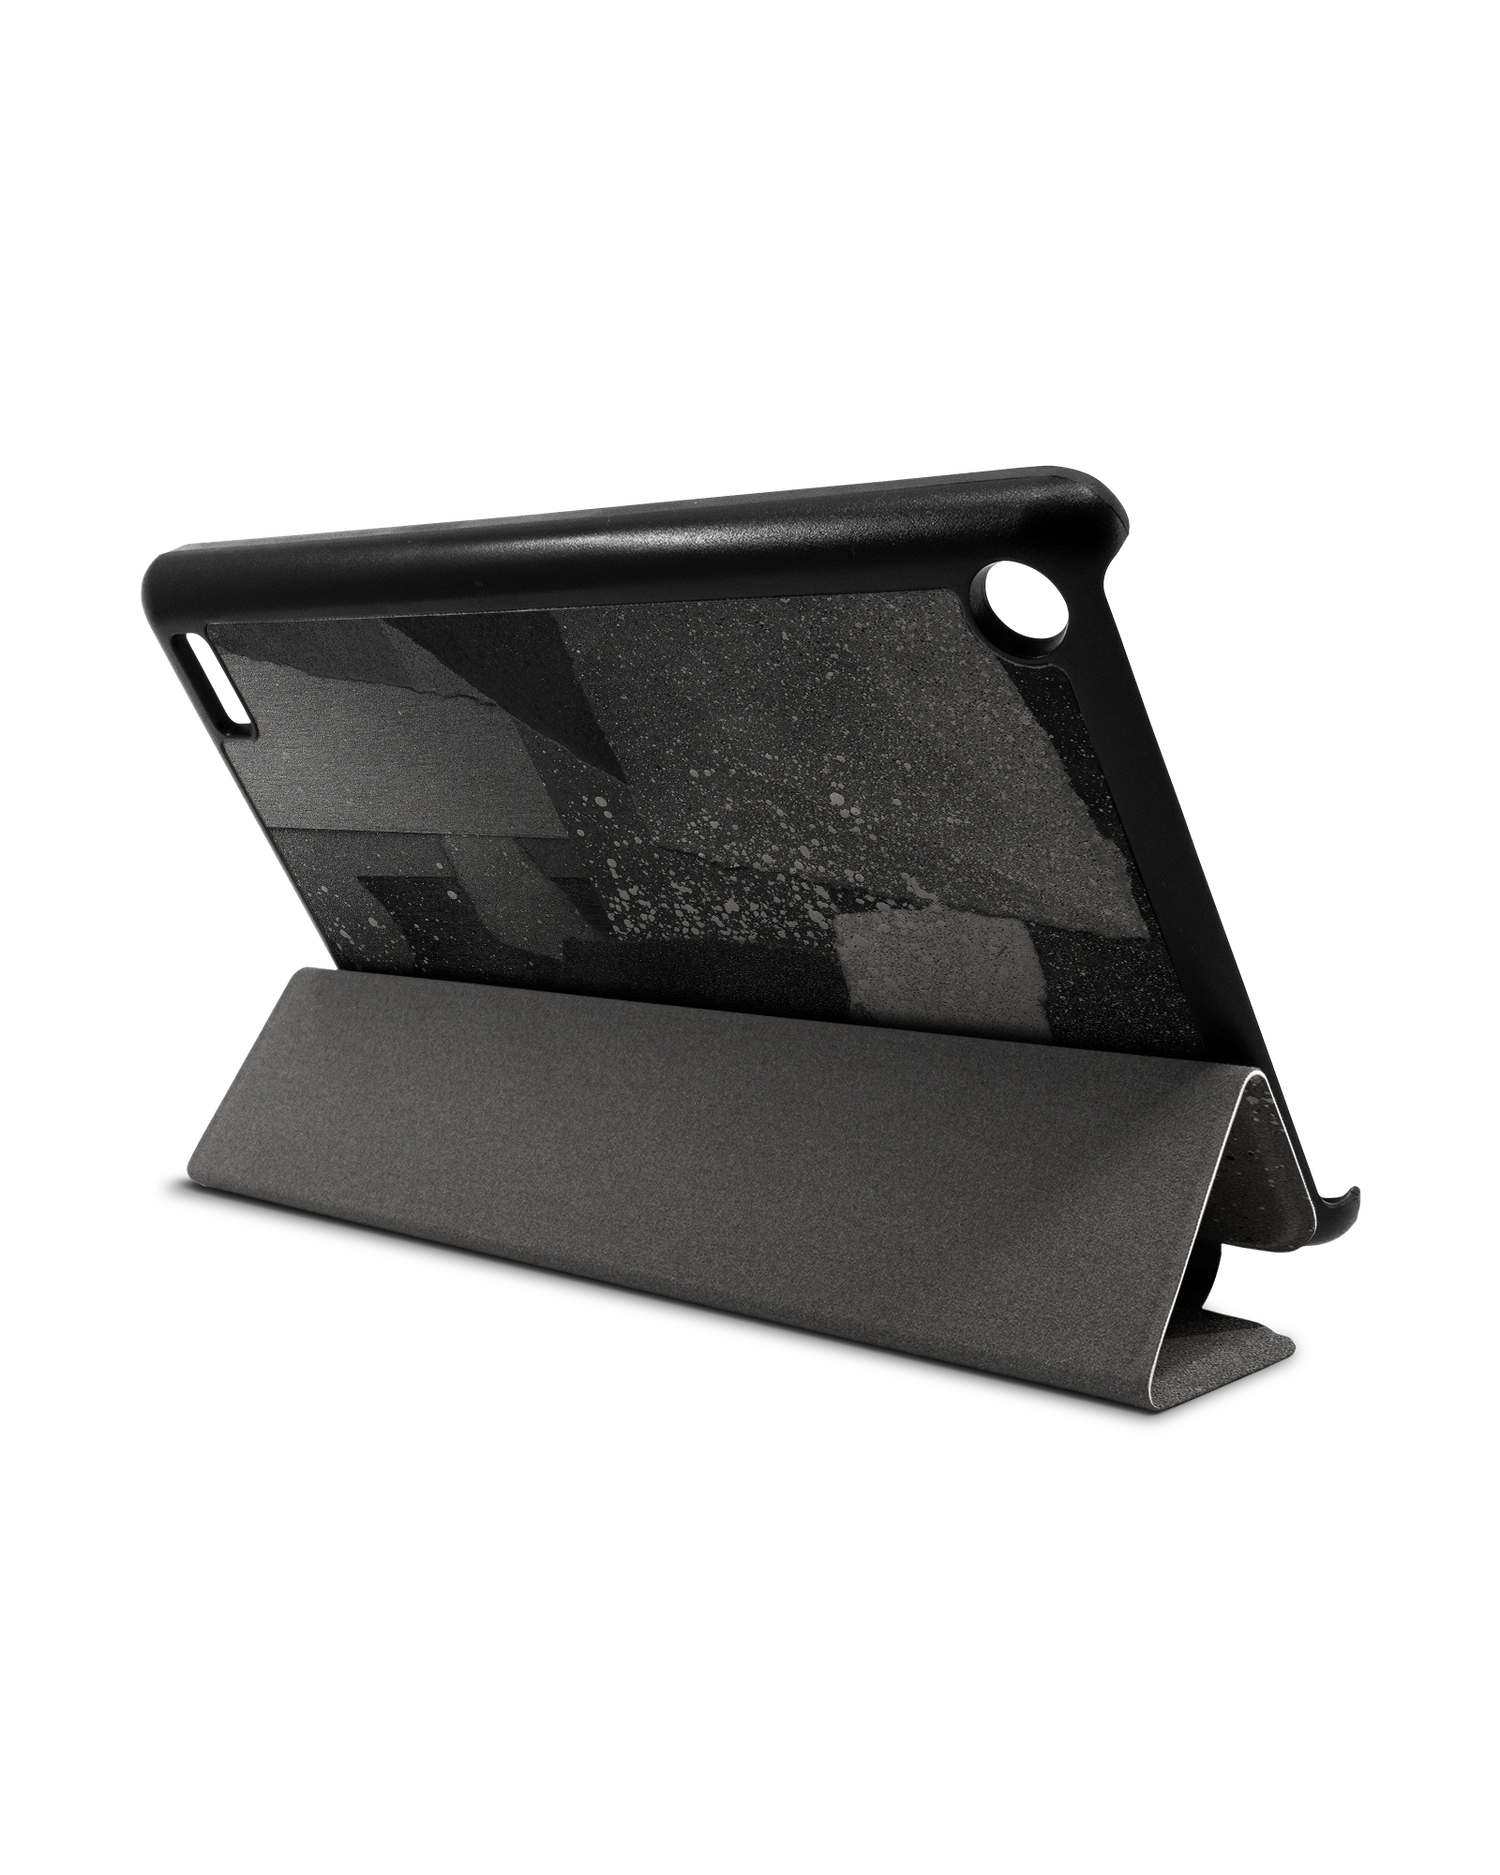 Torn Paper Collage Tablet Smart Case für Amazon Fire 7: Aufgestellt im Querformat